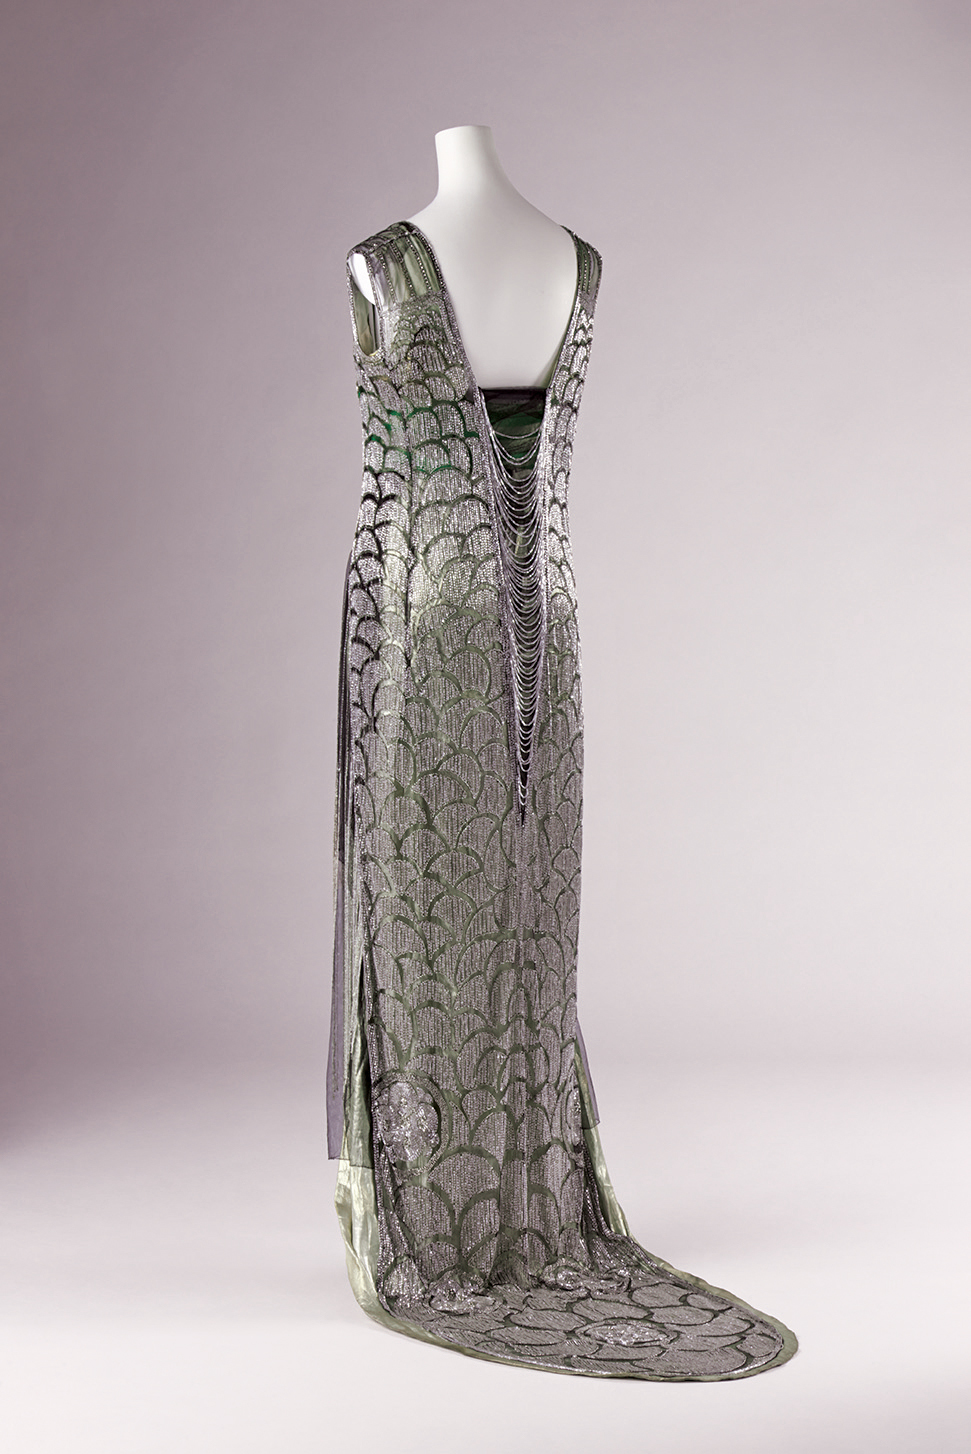 ベール[フランス]「イブニング・ドレス」1919年頃 京都服飾文化研究財団蔵 林雅之撮影